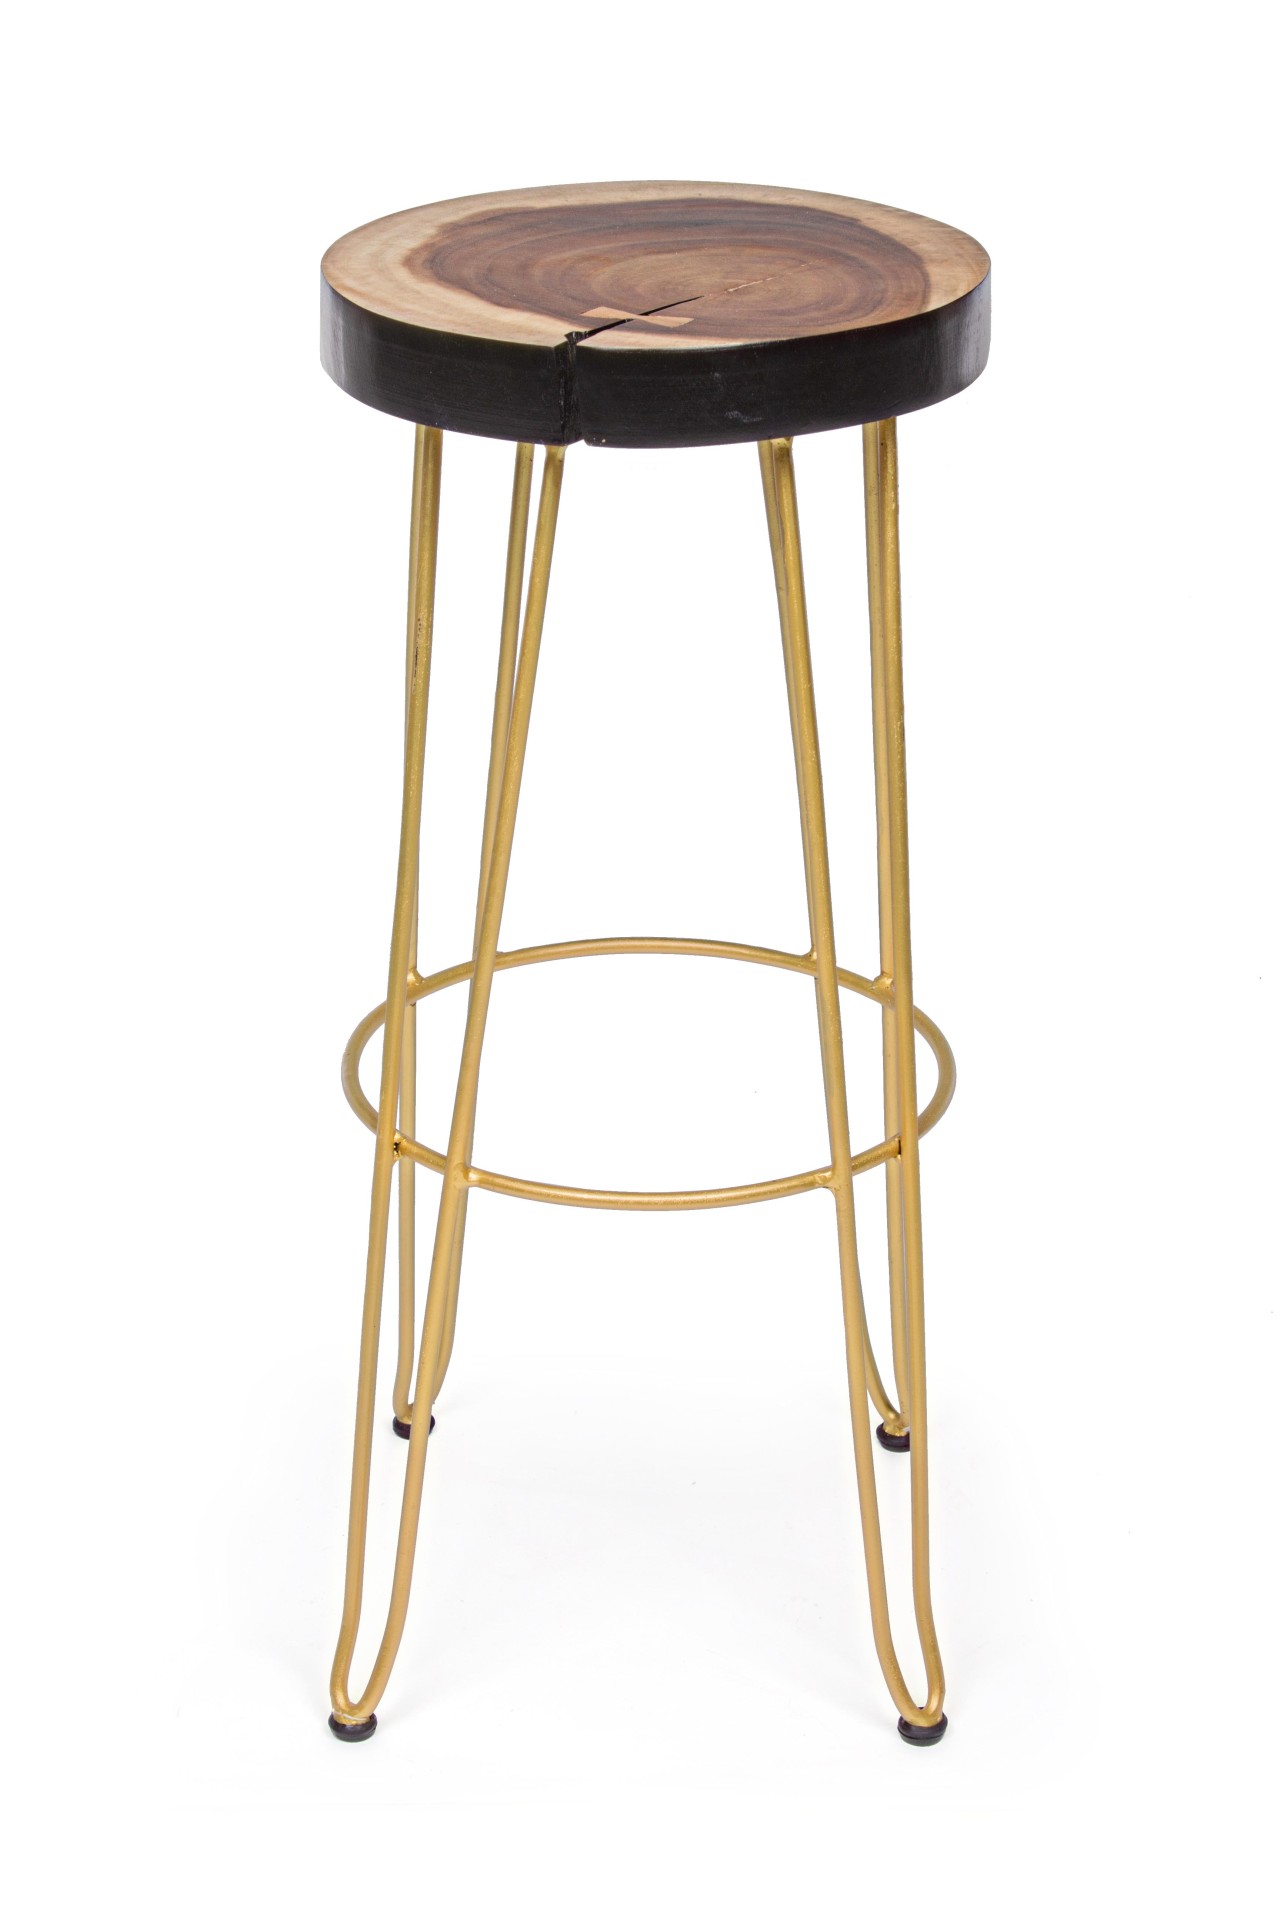 Der Barhocker Rakel überzeugt mit seinem klassischen Design. Gefertigt wurde er aus Mungur Holz, welches einen natürlichen Farbton besitzt. Das Gestell ist aus Metall und hat eine goldenen Farbe. Die Sitzhöhe des Hockers beträgt 74 cm.